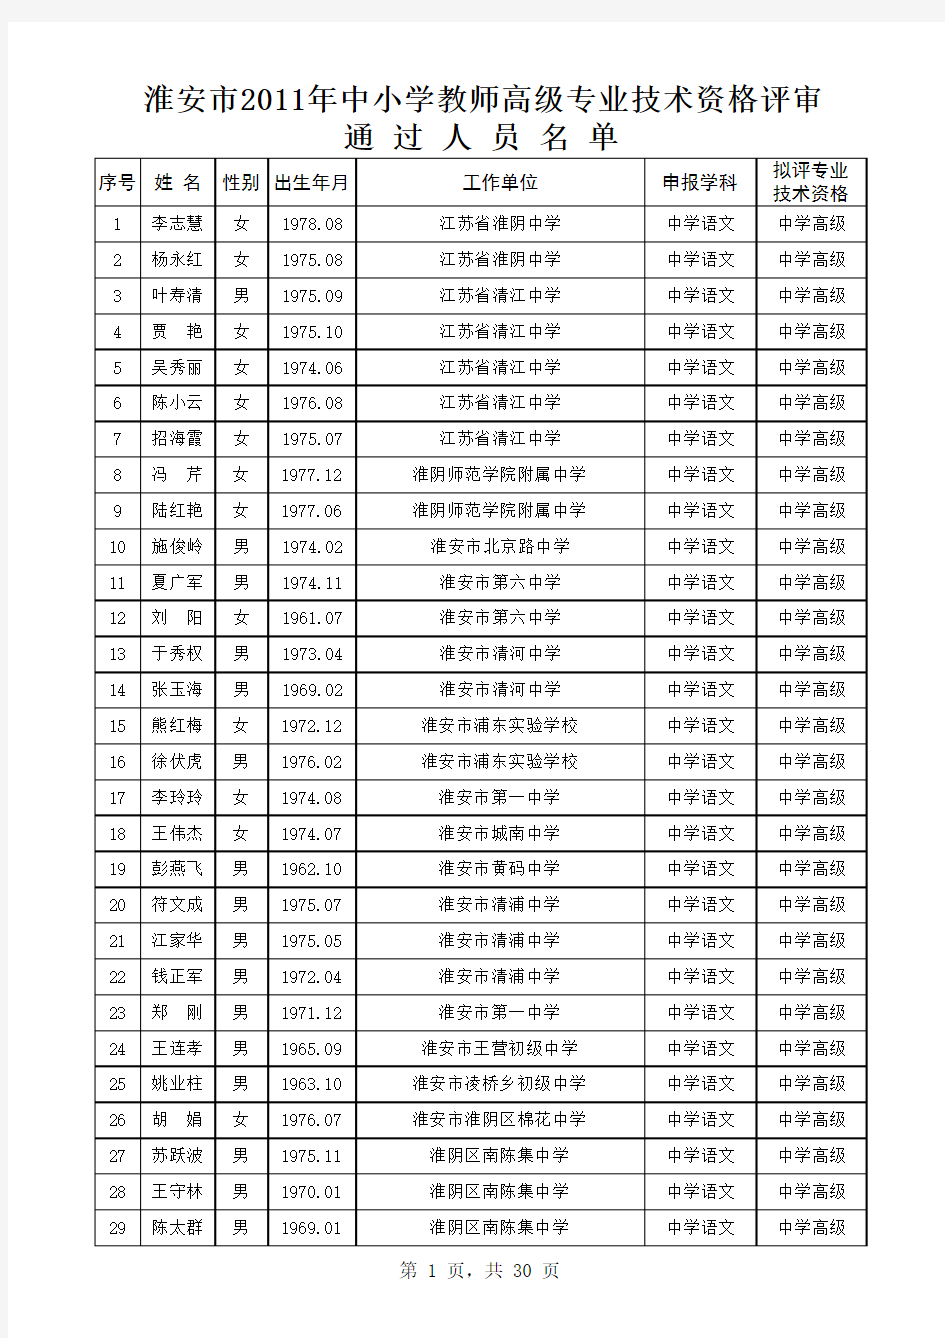 2011年淮安市申报中学高级教师公示人员名单